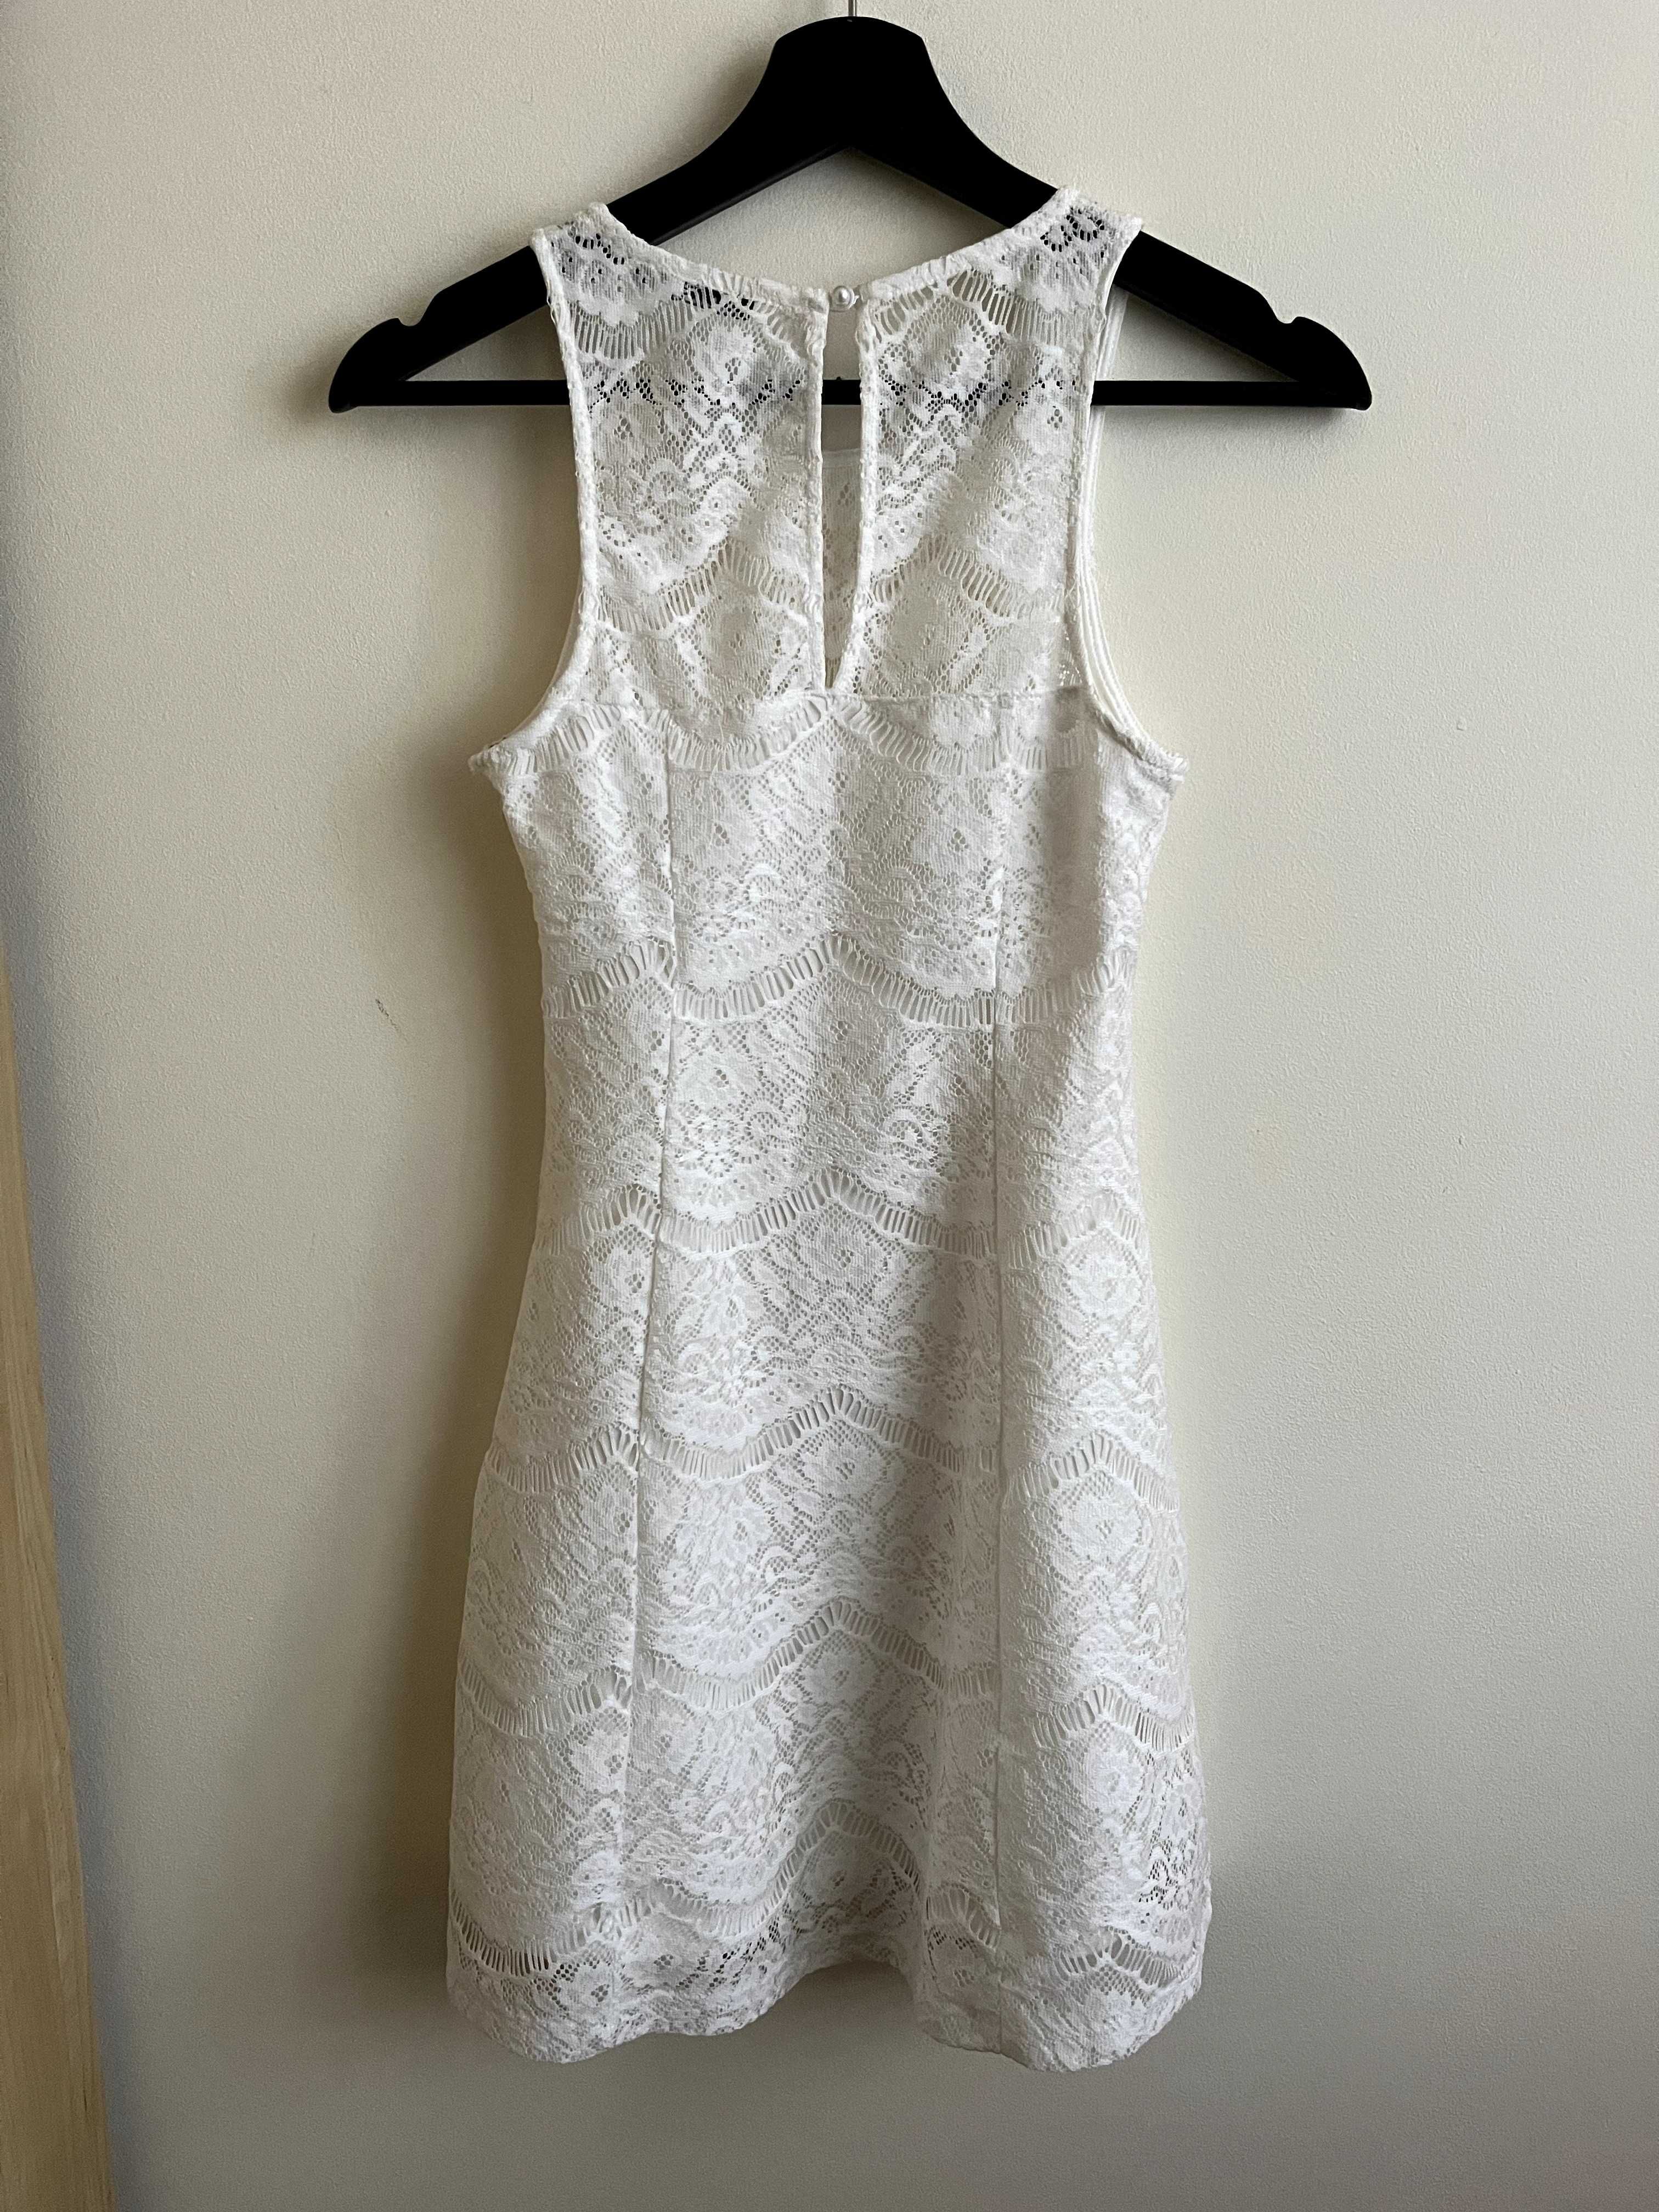 sukienka biała koronkowa na ramiączka terranowa xs 34